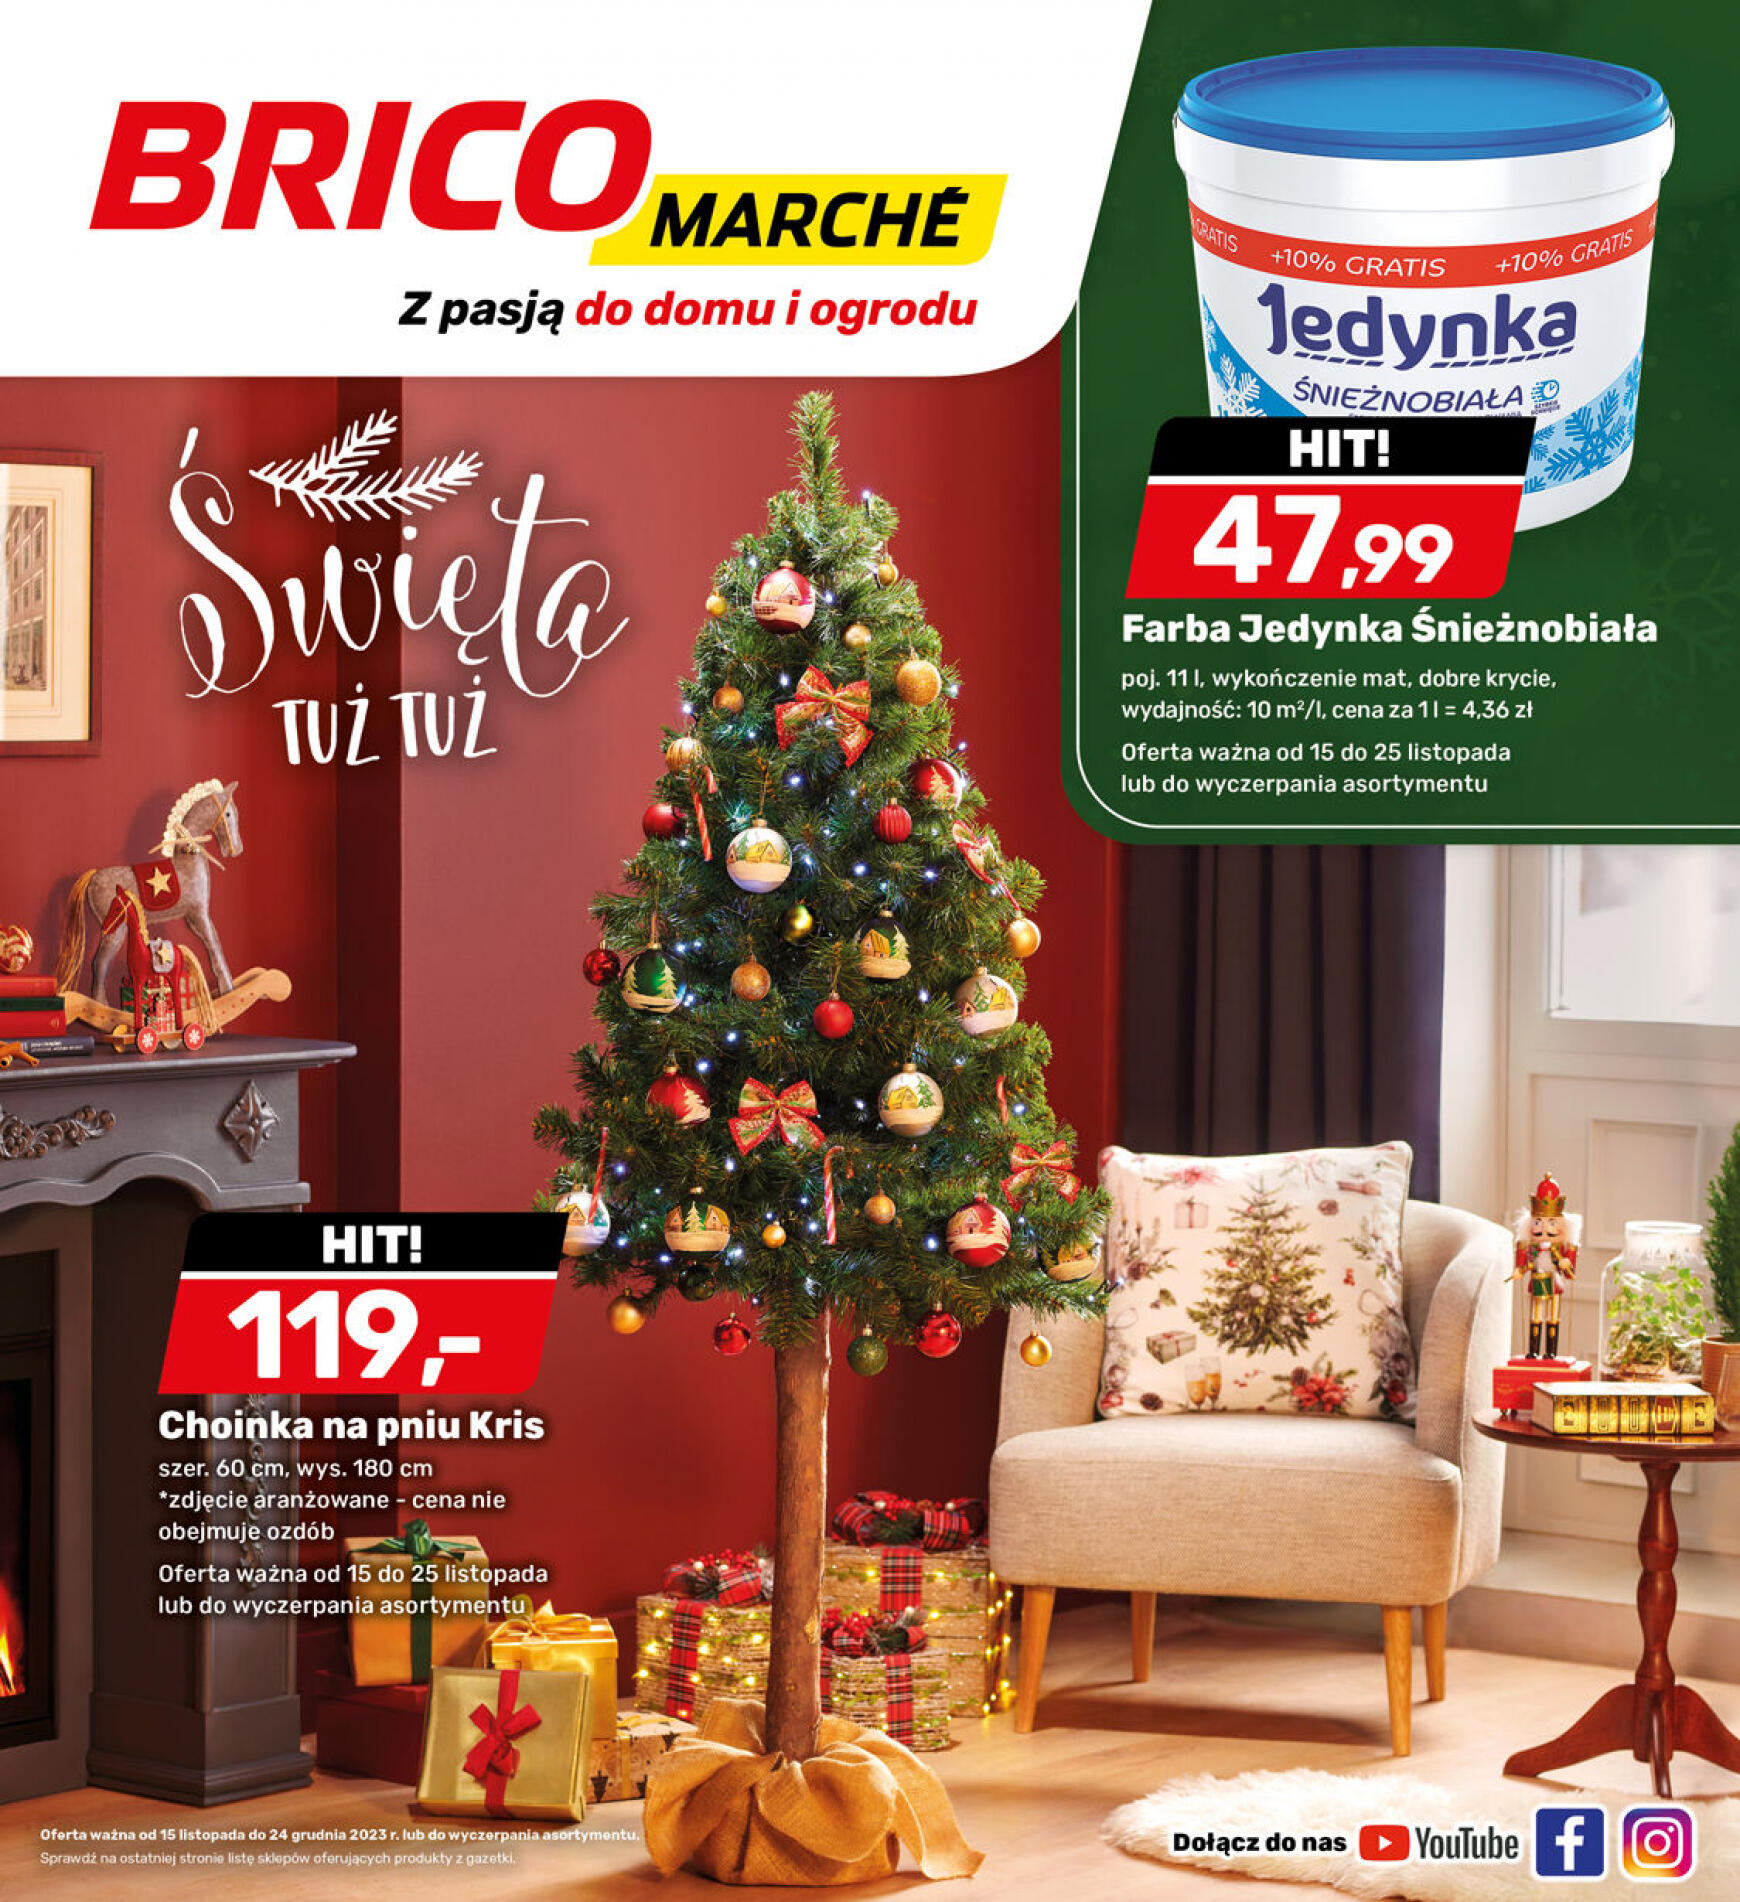 brico-marche - - Bricomarche - page: 4